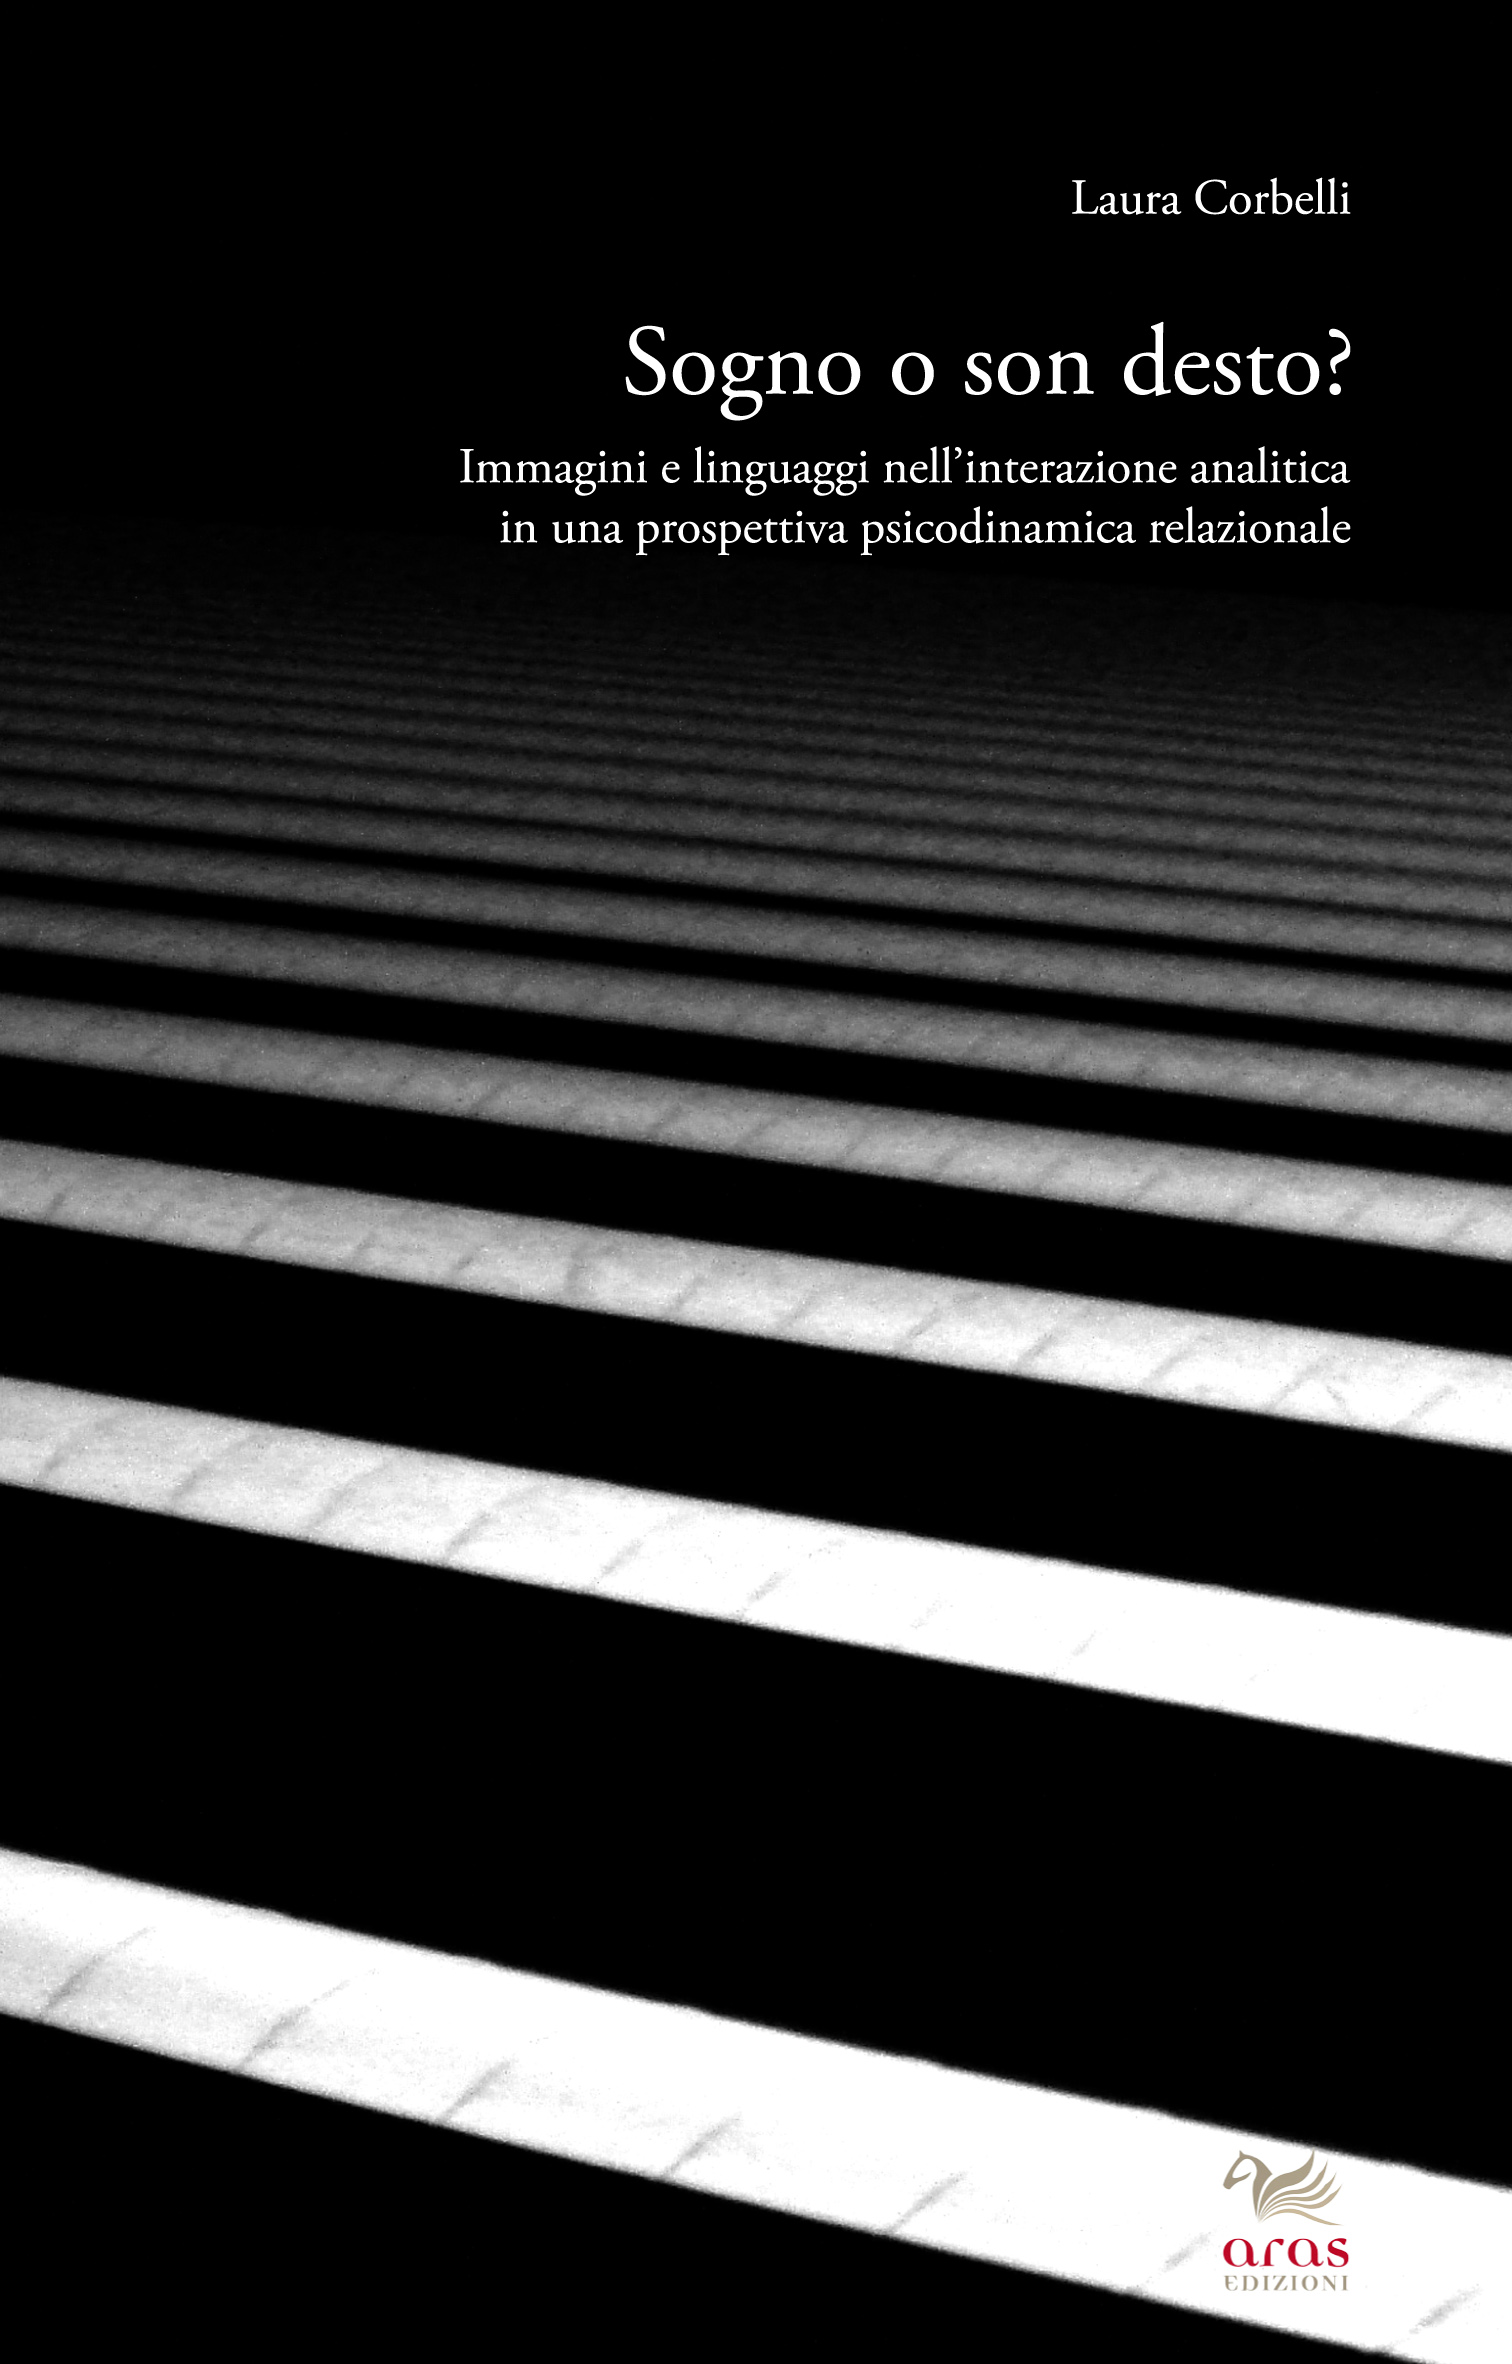 E-book, Sogno o son desto? : immagini e linguaggi nell'interazione analitica in una prospettiva psicodinamica relazionale, Aras